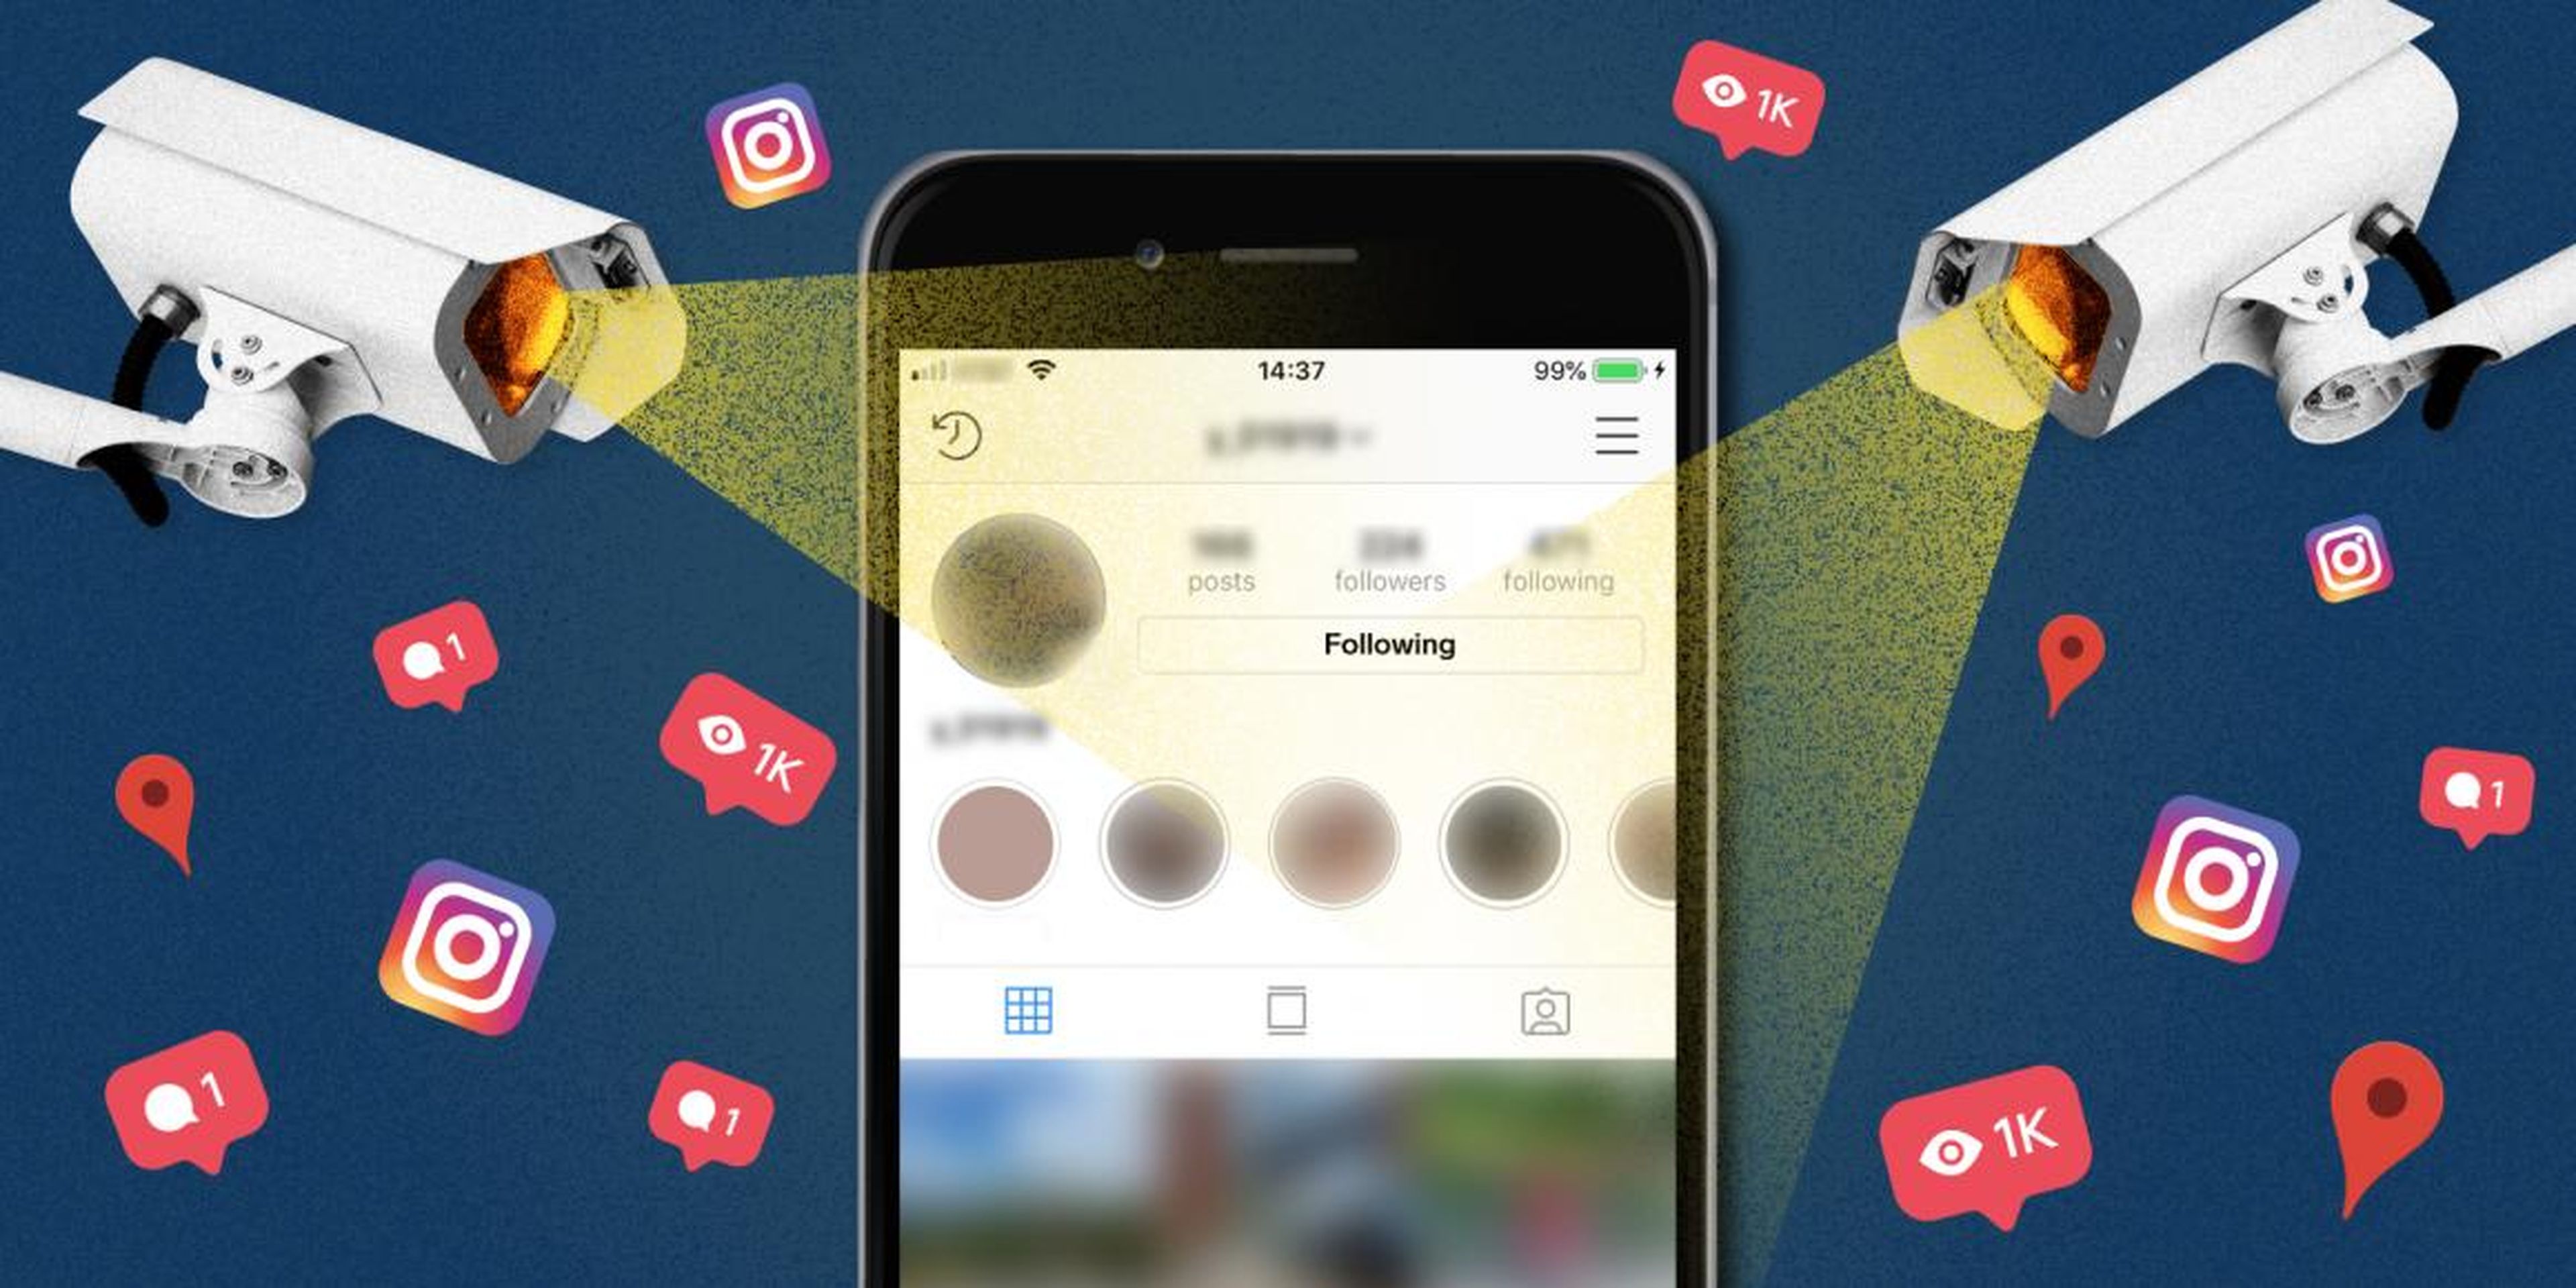 Las prácticas de privacidad poco estrictas de Instagram permiten que un socio de confianza rastree las ubicaciones físicas de millones de usuarios, guarde en secreto sus historias y desobedezca sus reglas.